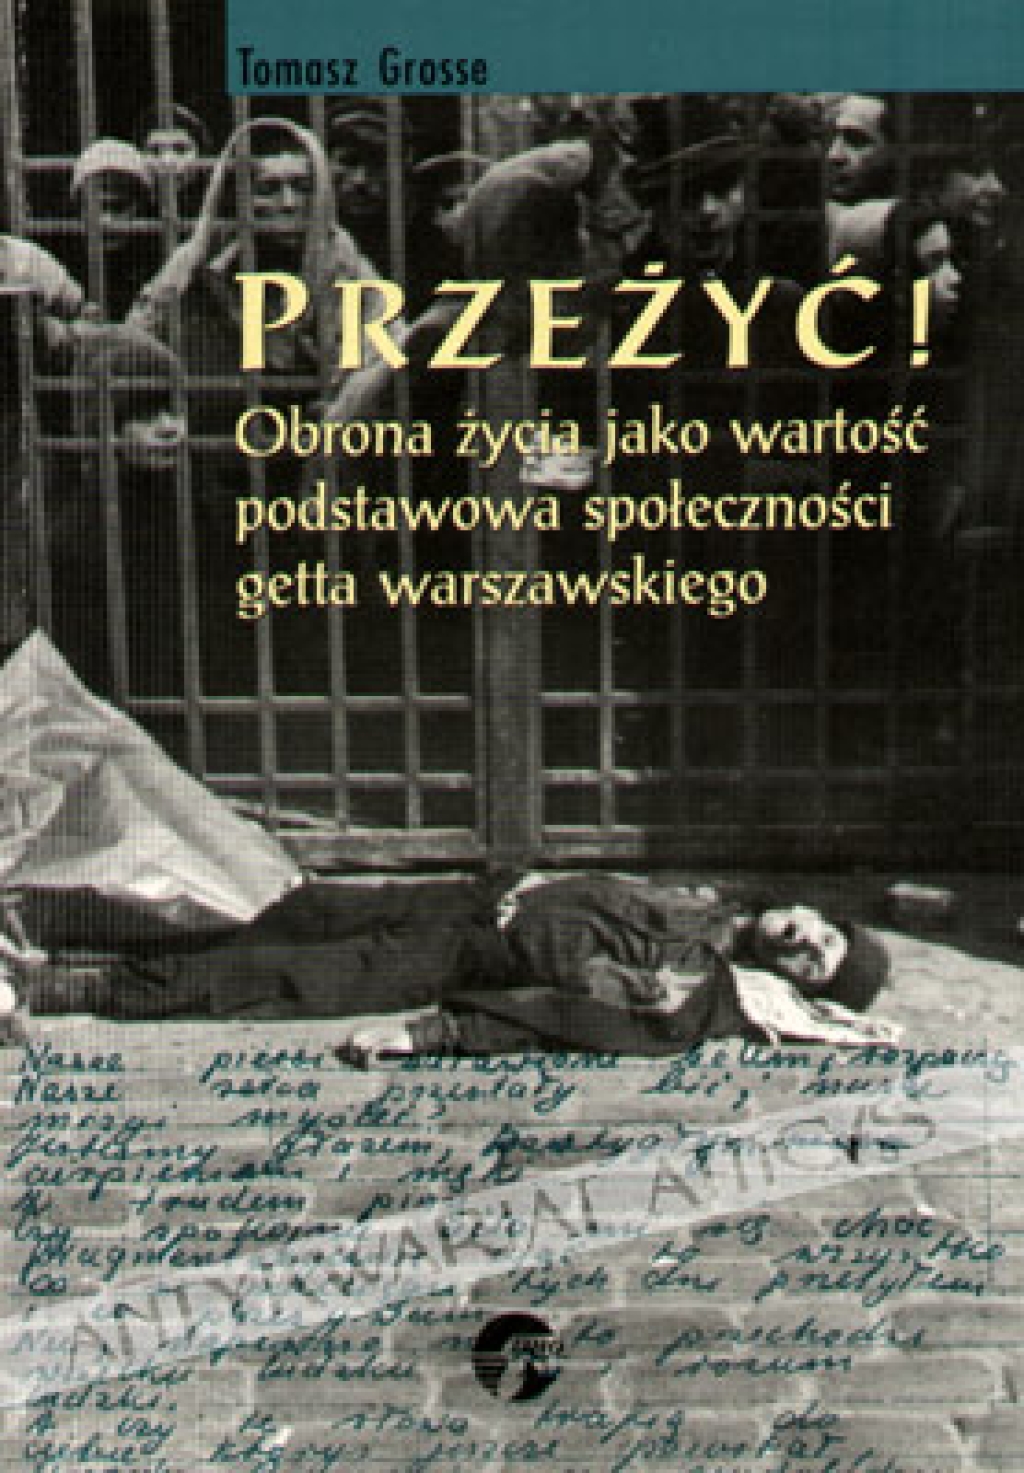 Przeżyć! Obrona życia jako wartość podstawowa społeczności getta warszawskiego